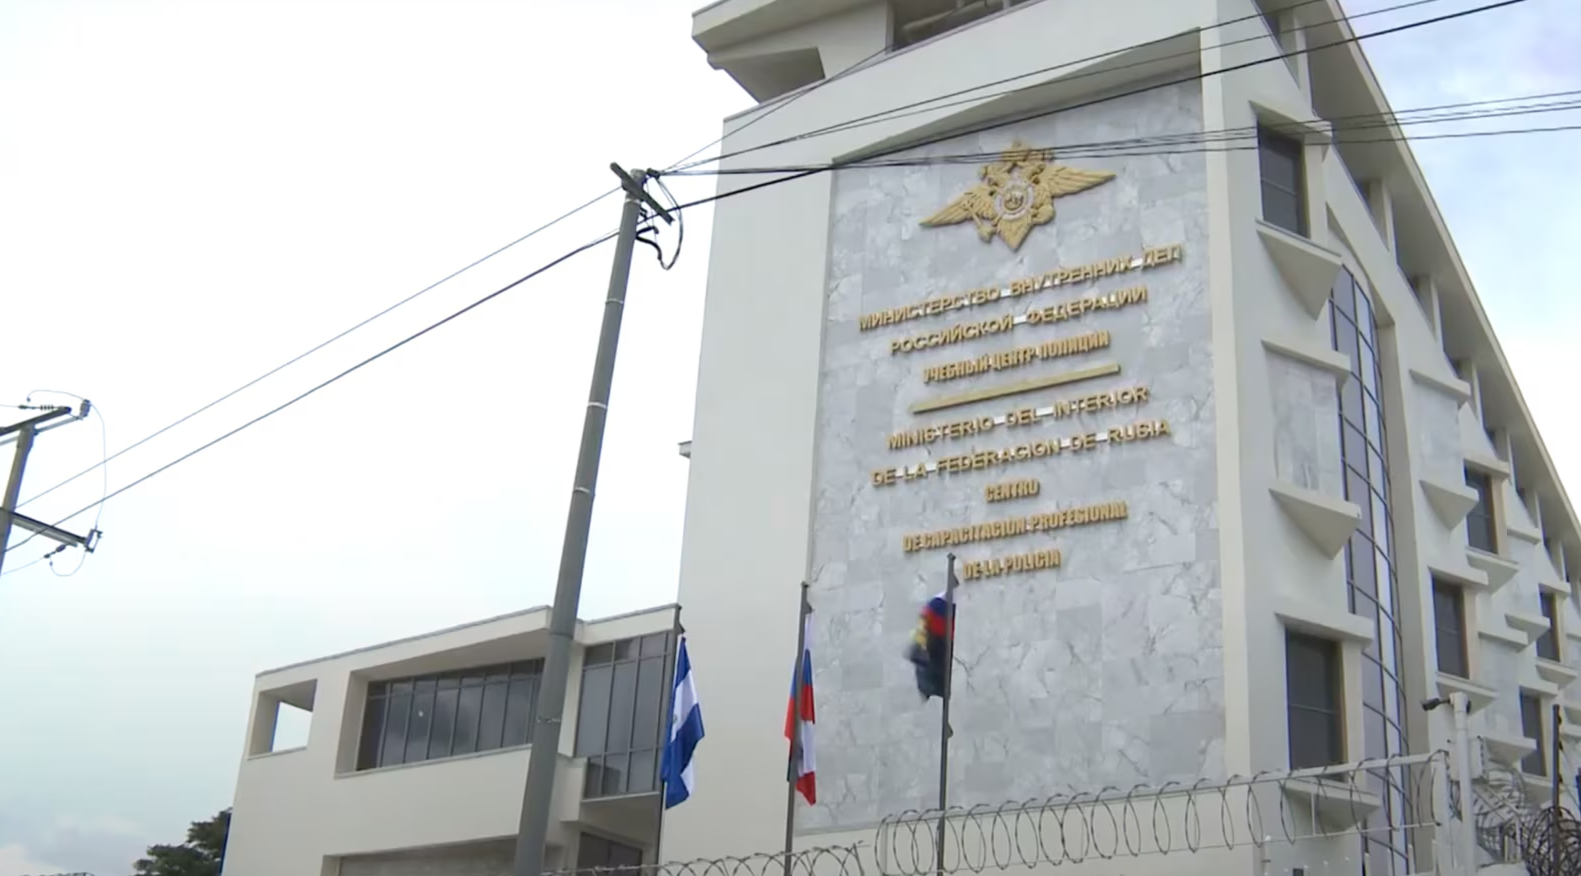 ¿Qué hace el centro ruso que opera en Nicaragua y que fue sancionado por EEUU?